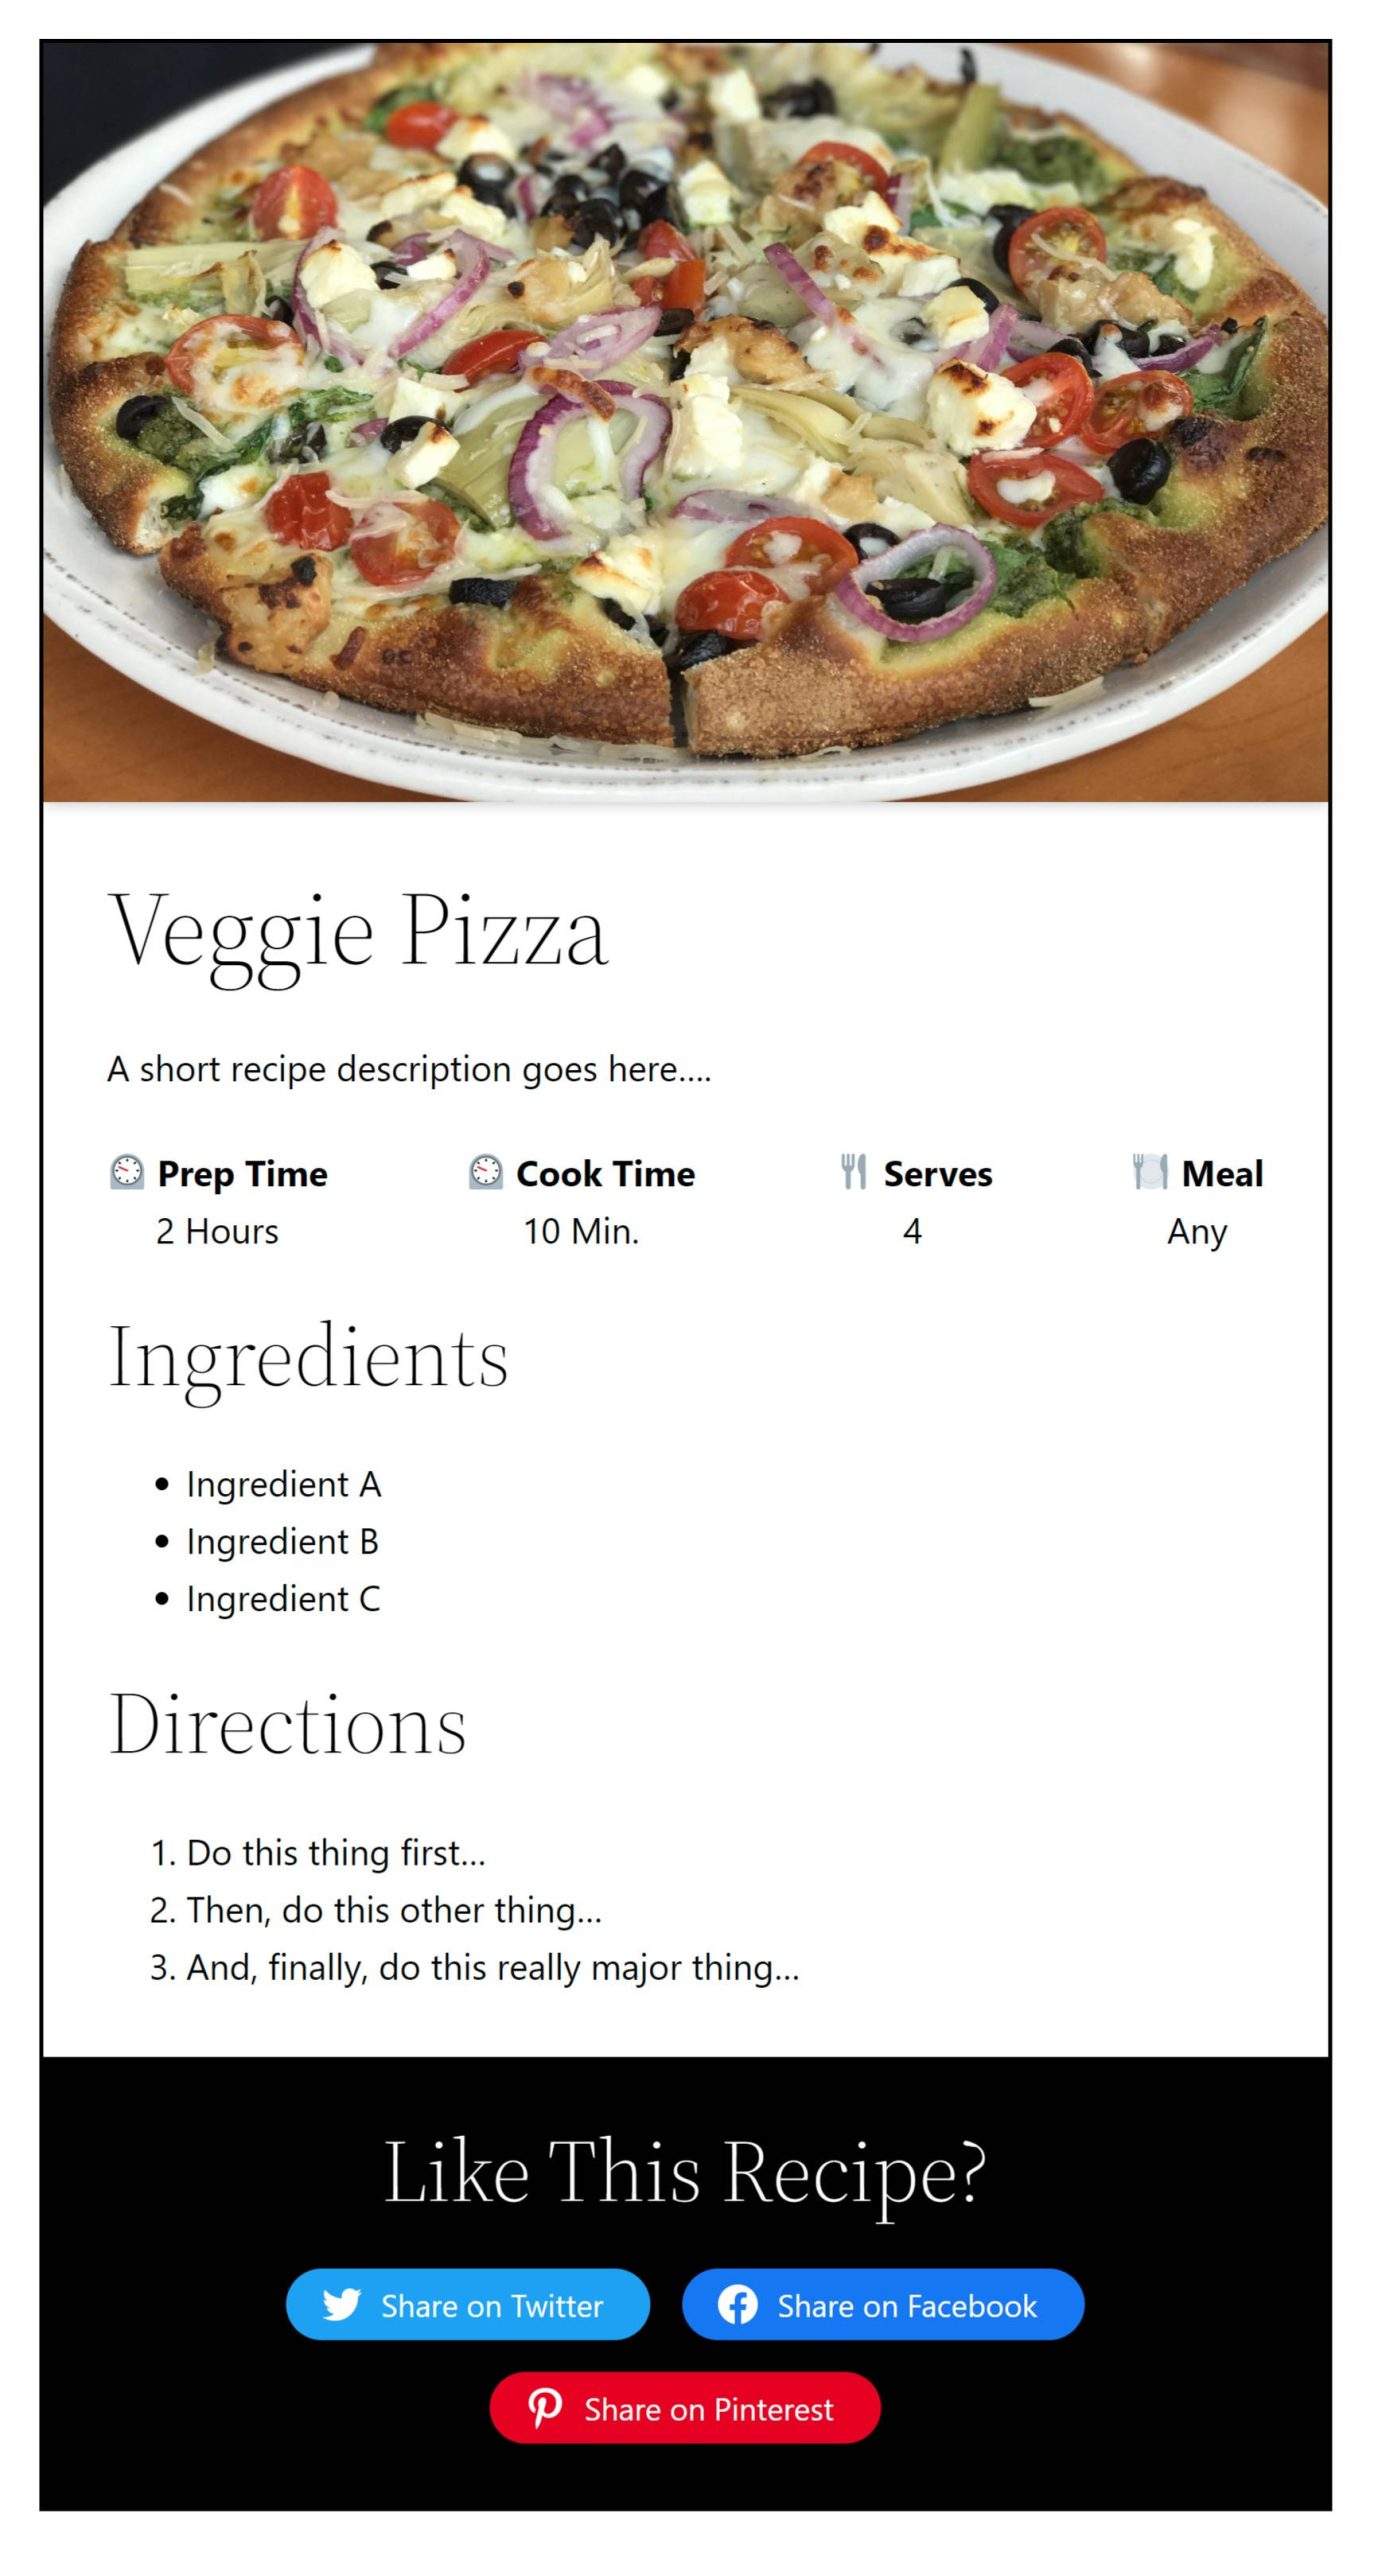 Une carte de recette avec une image d'une pizza en haut.  Viennent ensuite un titre, une description, une liste d'ingrédients, une liste d'instructions et une section de partage social.